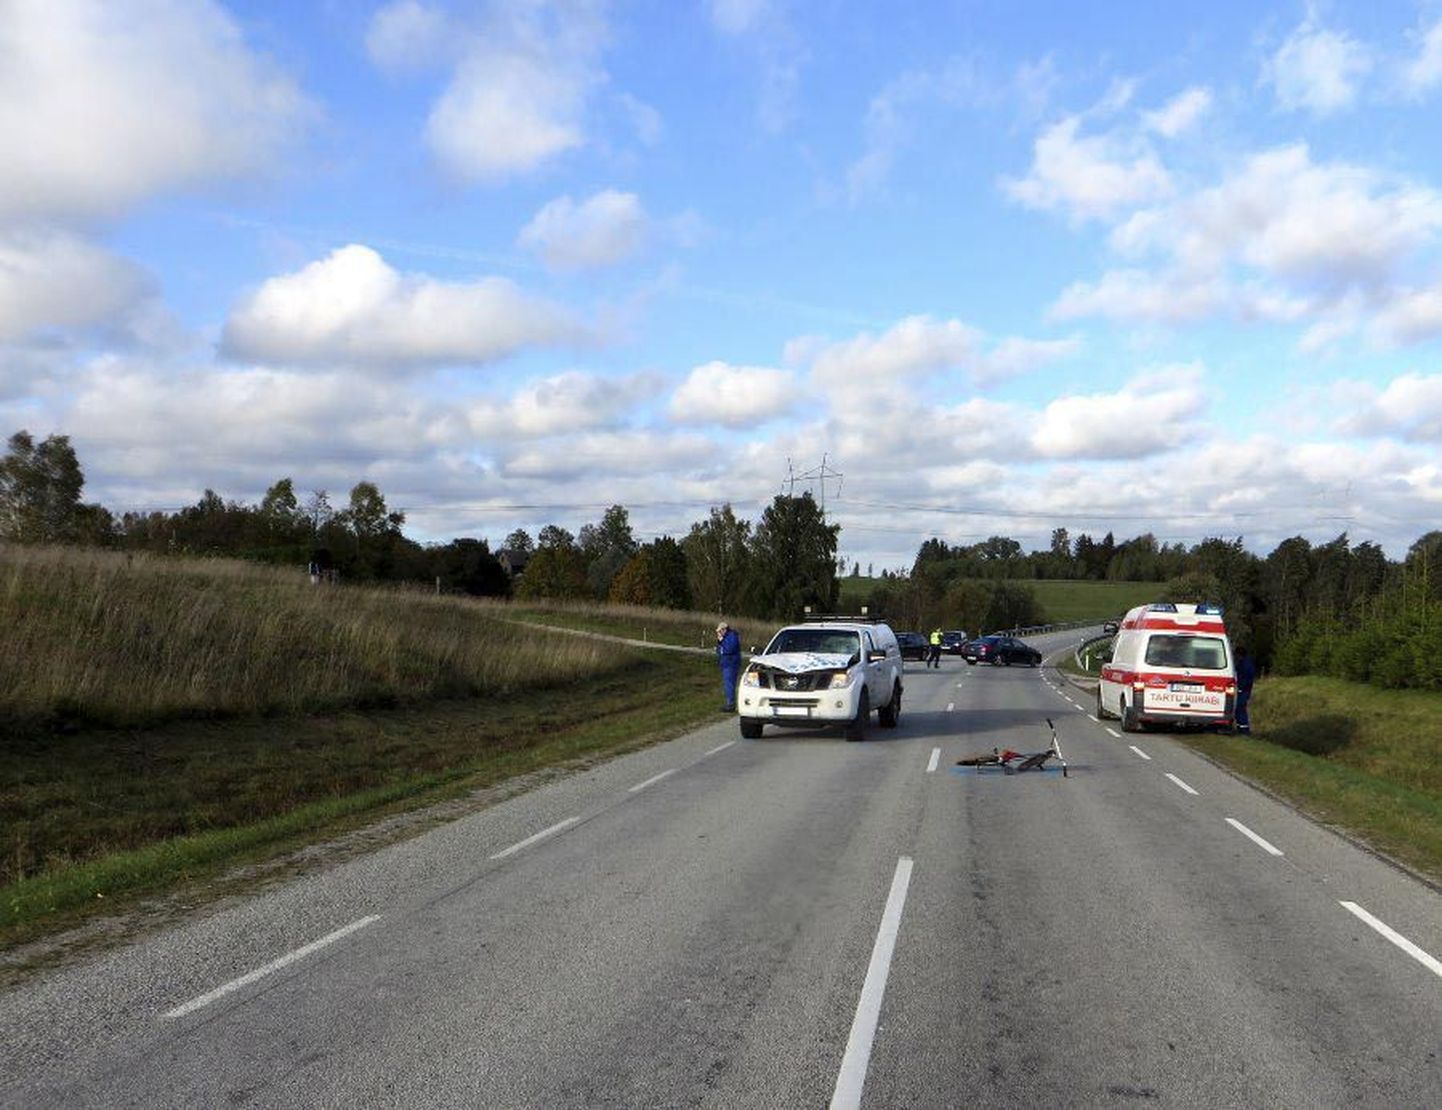 Reede pärastlõunal juhtus Peetrimõisa külas Viljandi–Põltsamaa maantee 1,1. kilomeetril õnnetus, kui trikirattaga noormees sõitis kõrvalteelt ette peateel liikuvale Nissanile. Esmaspäeva õhtul rattur suri.